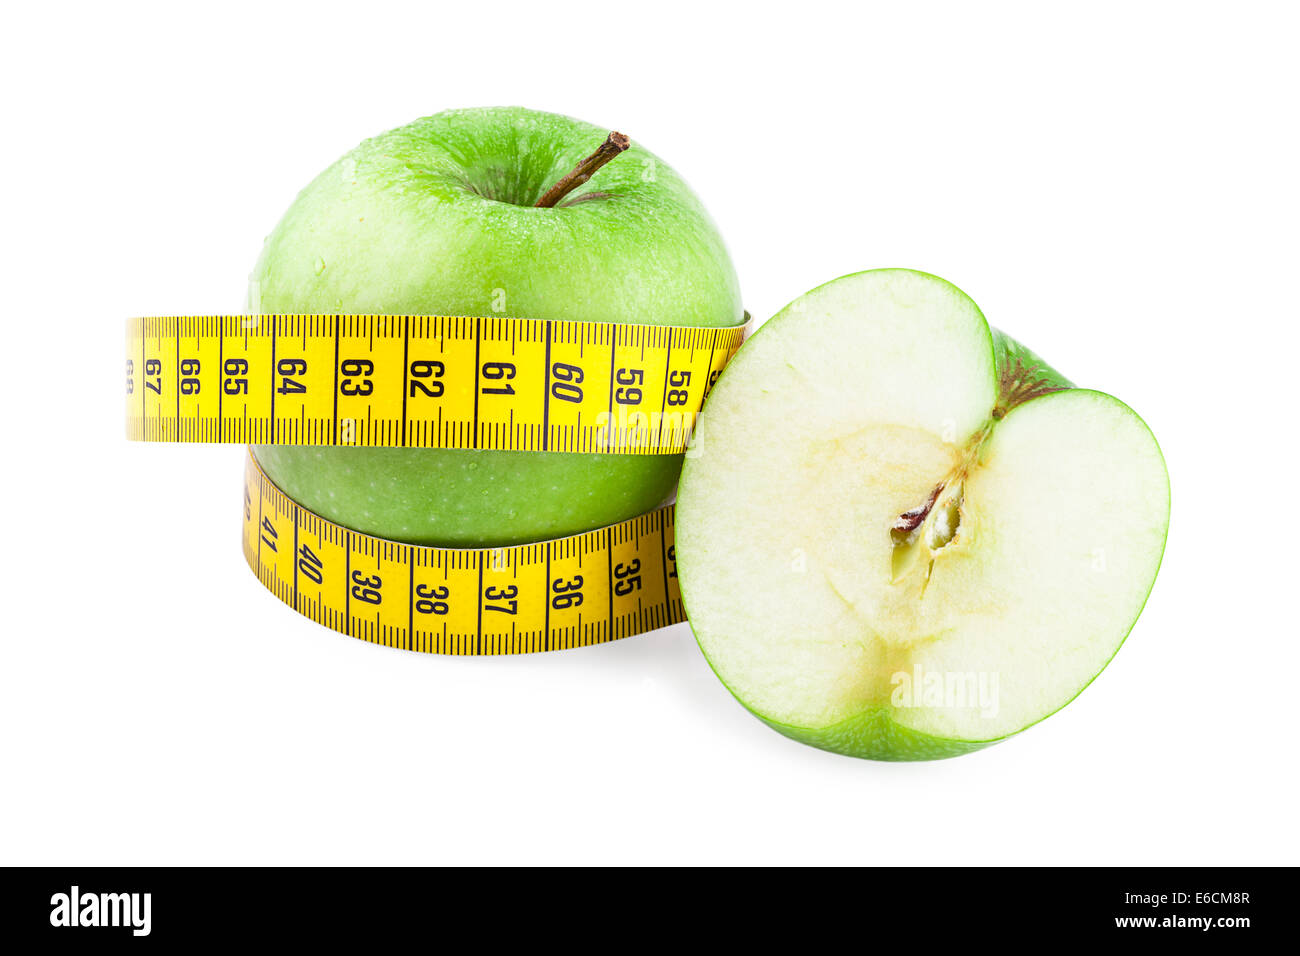 L'alimentation saine et l'alimentation de concept. Pomme verte et bande de mesure isolé sur fond blanc Banque D'Images